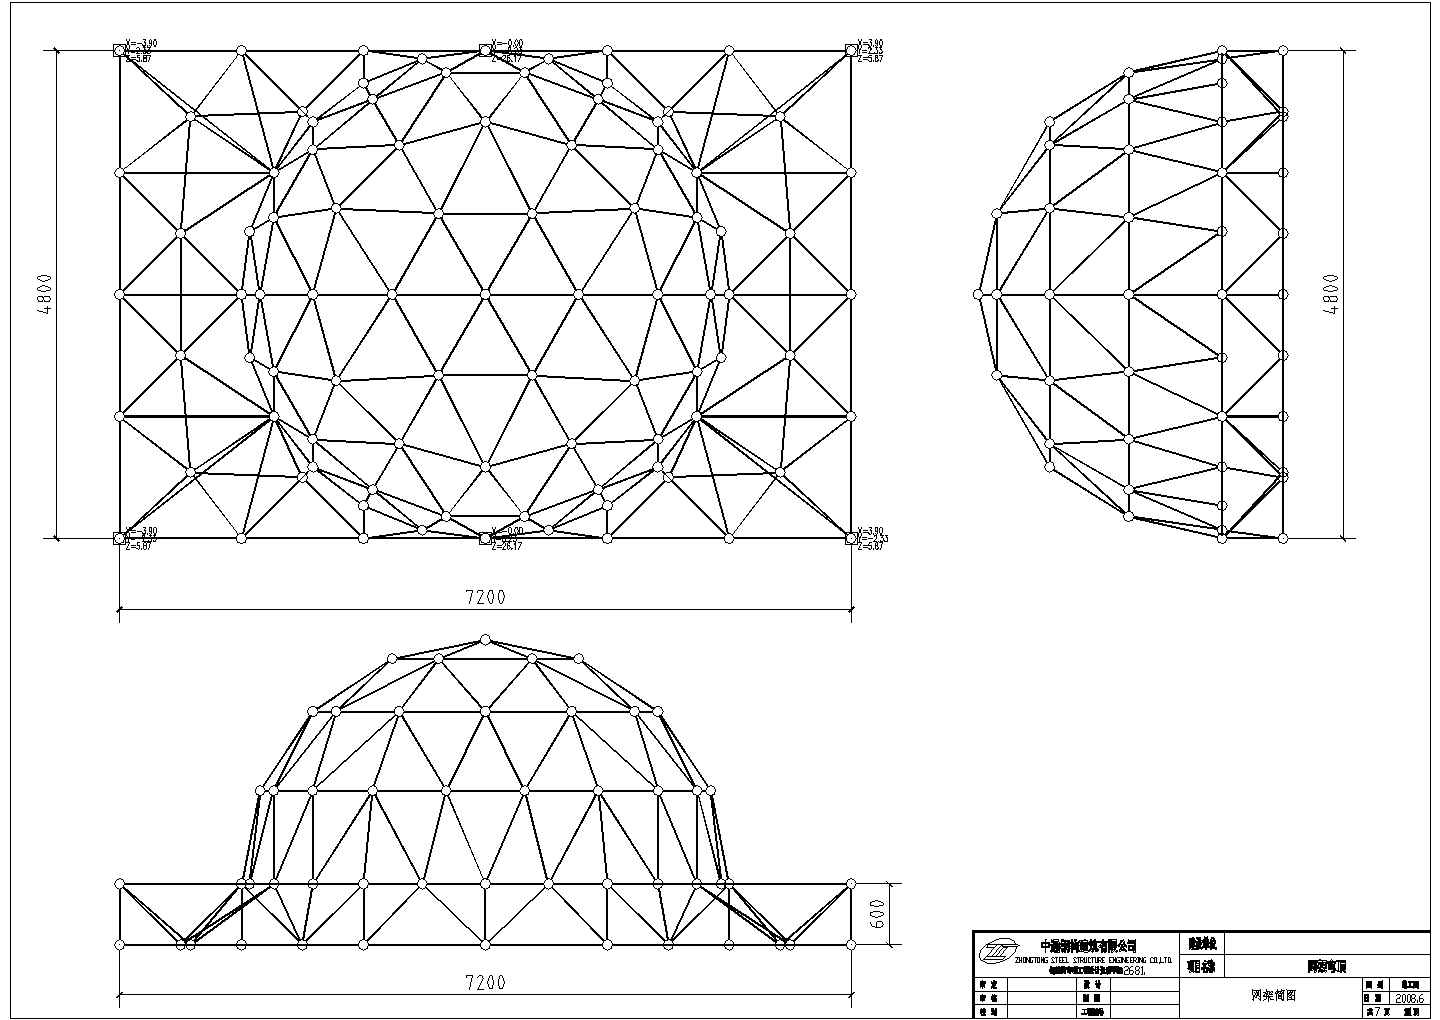 使用SFCAD2000软件设计的网架小穹顶